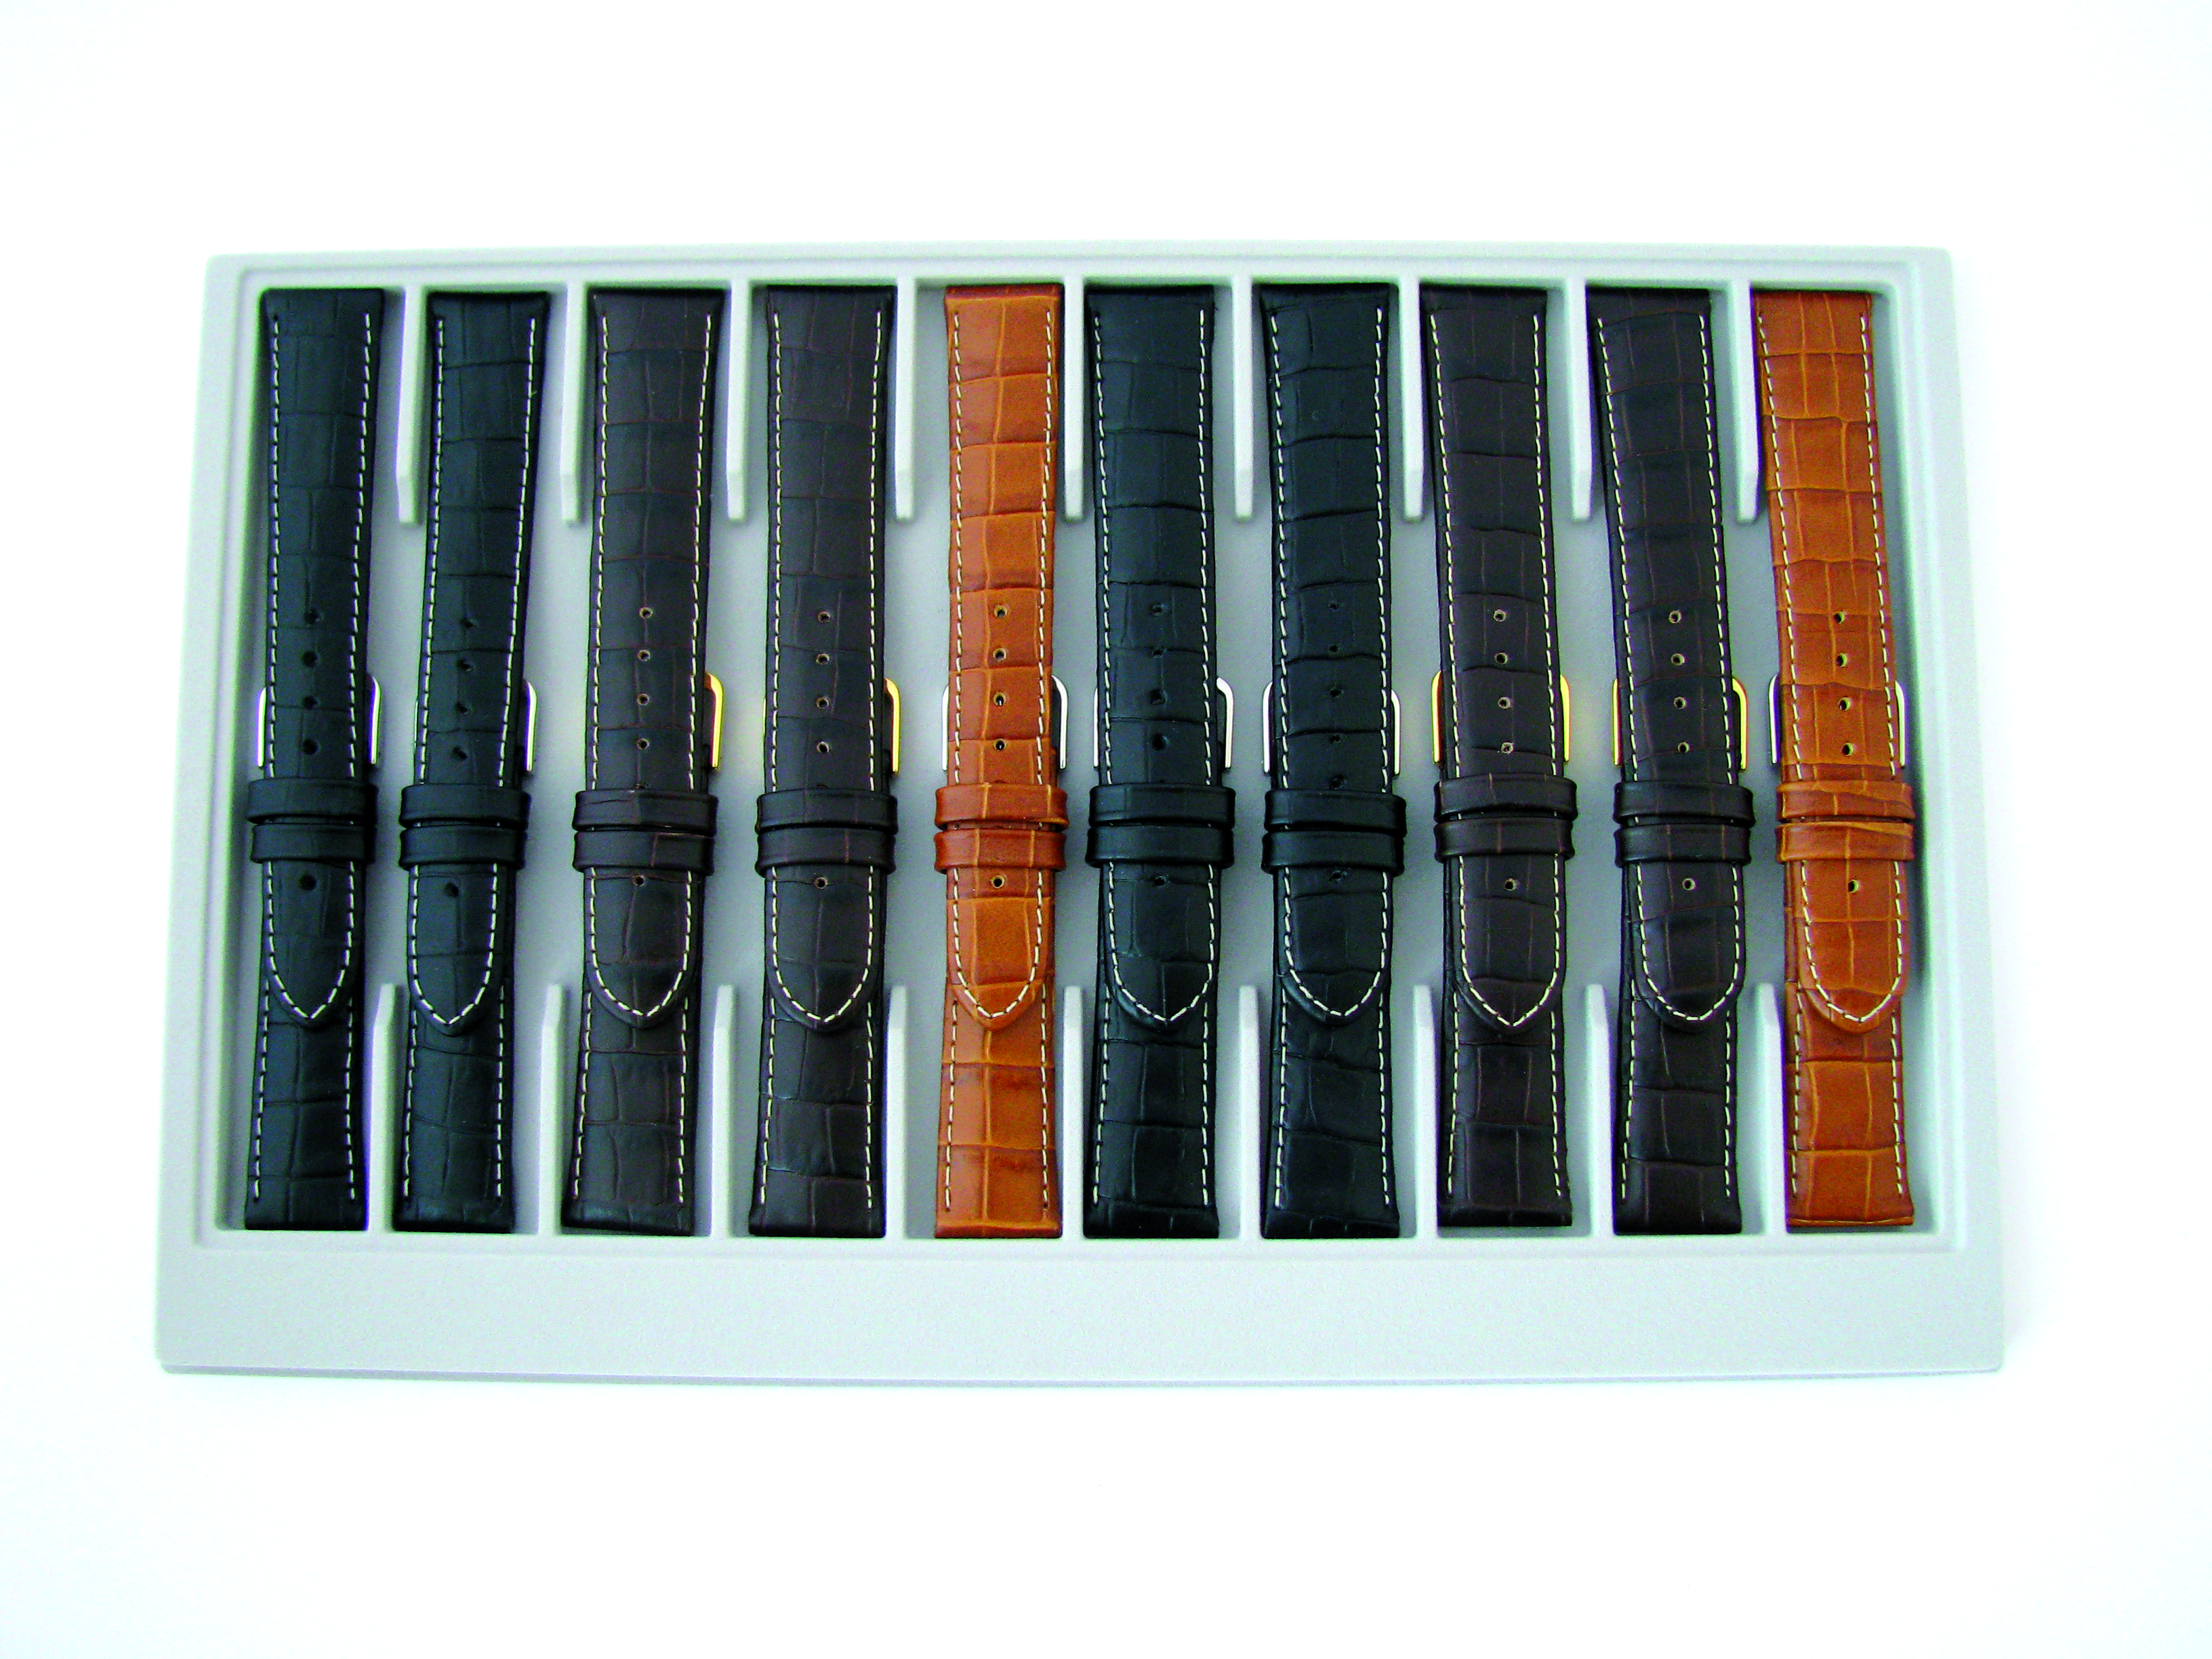 Paski skórzane zestaw 10 sztuk Kalb Louisiana kroko 18-20mm czarny, ciemny brąz, średni brąz ze strukturą kroko i kontrastowy szew